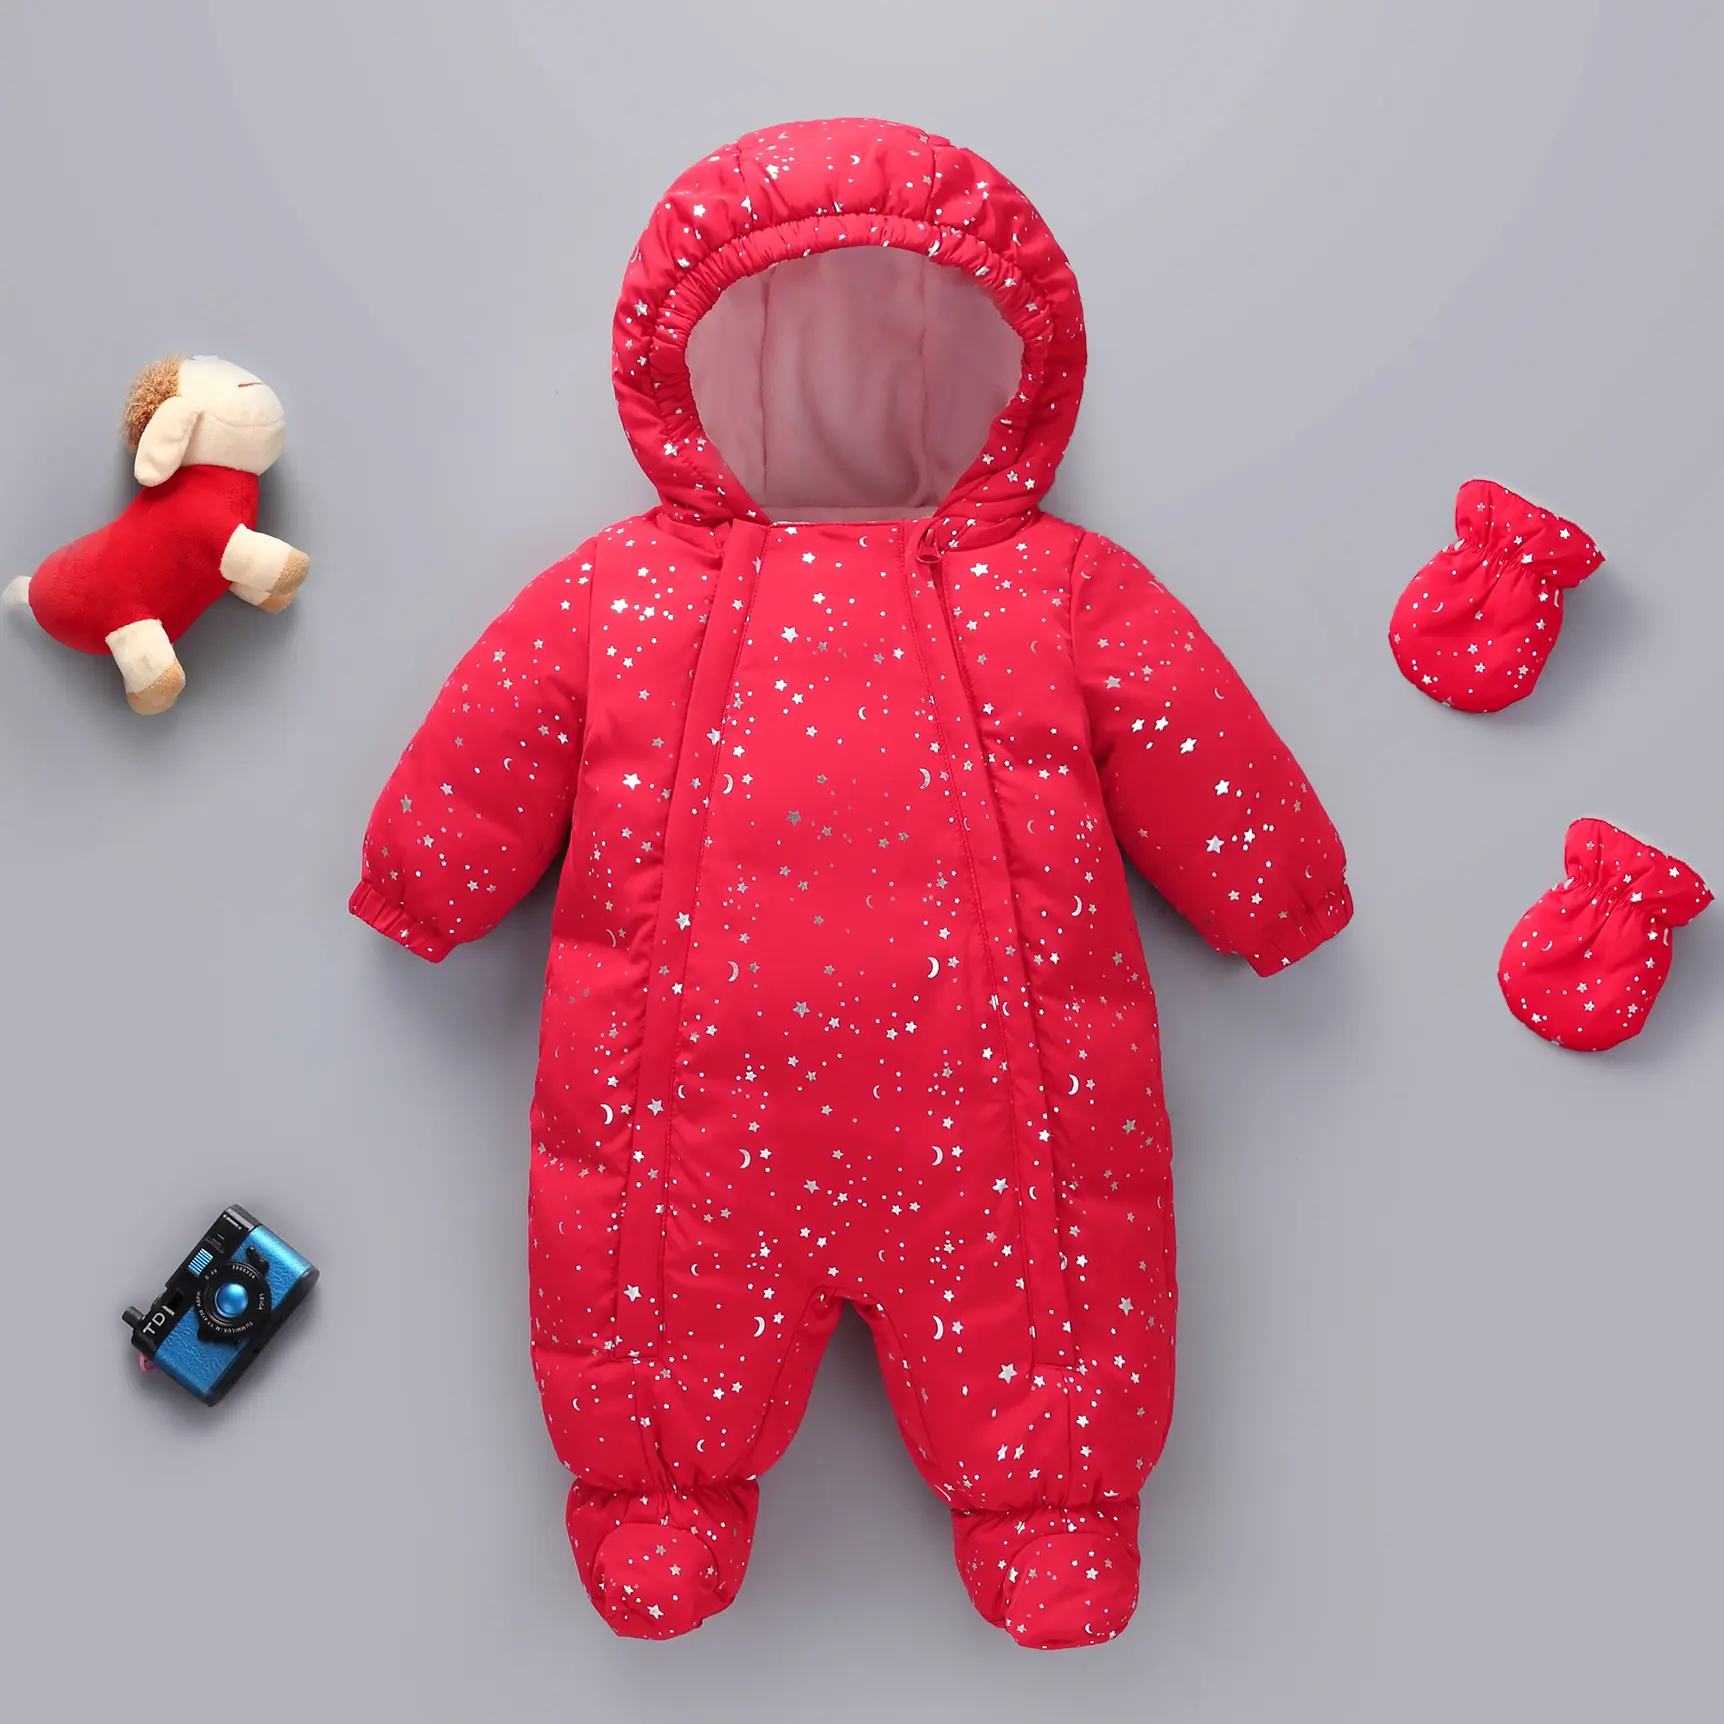 YQ356 traje de nieve para bebé recién nacido, ropa de nieve, abrigos para niño, pelele cálido, mono de invierno, peleles de bebé cálidos